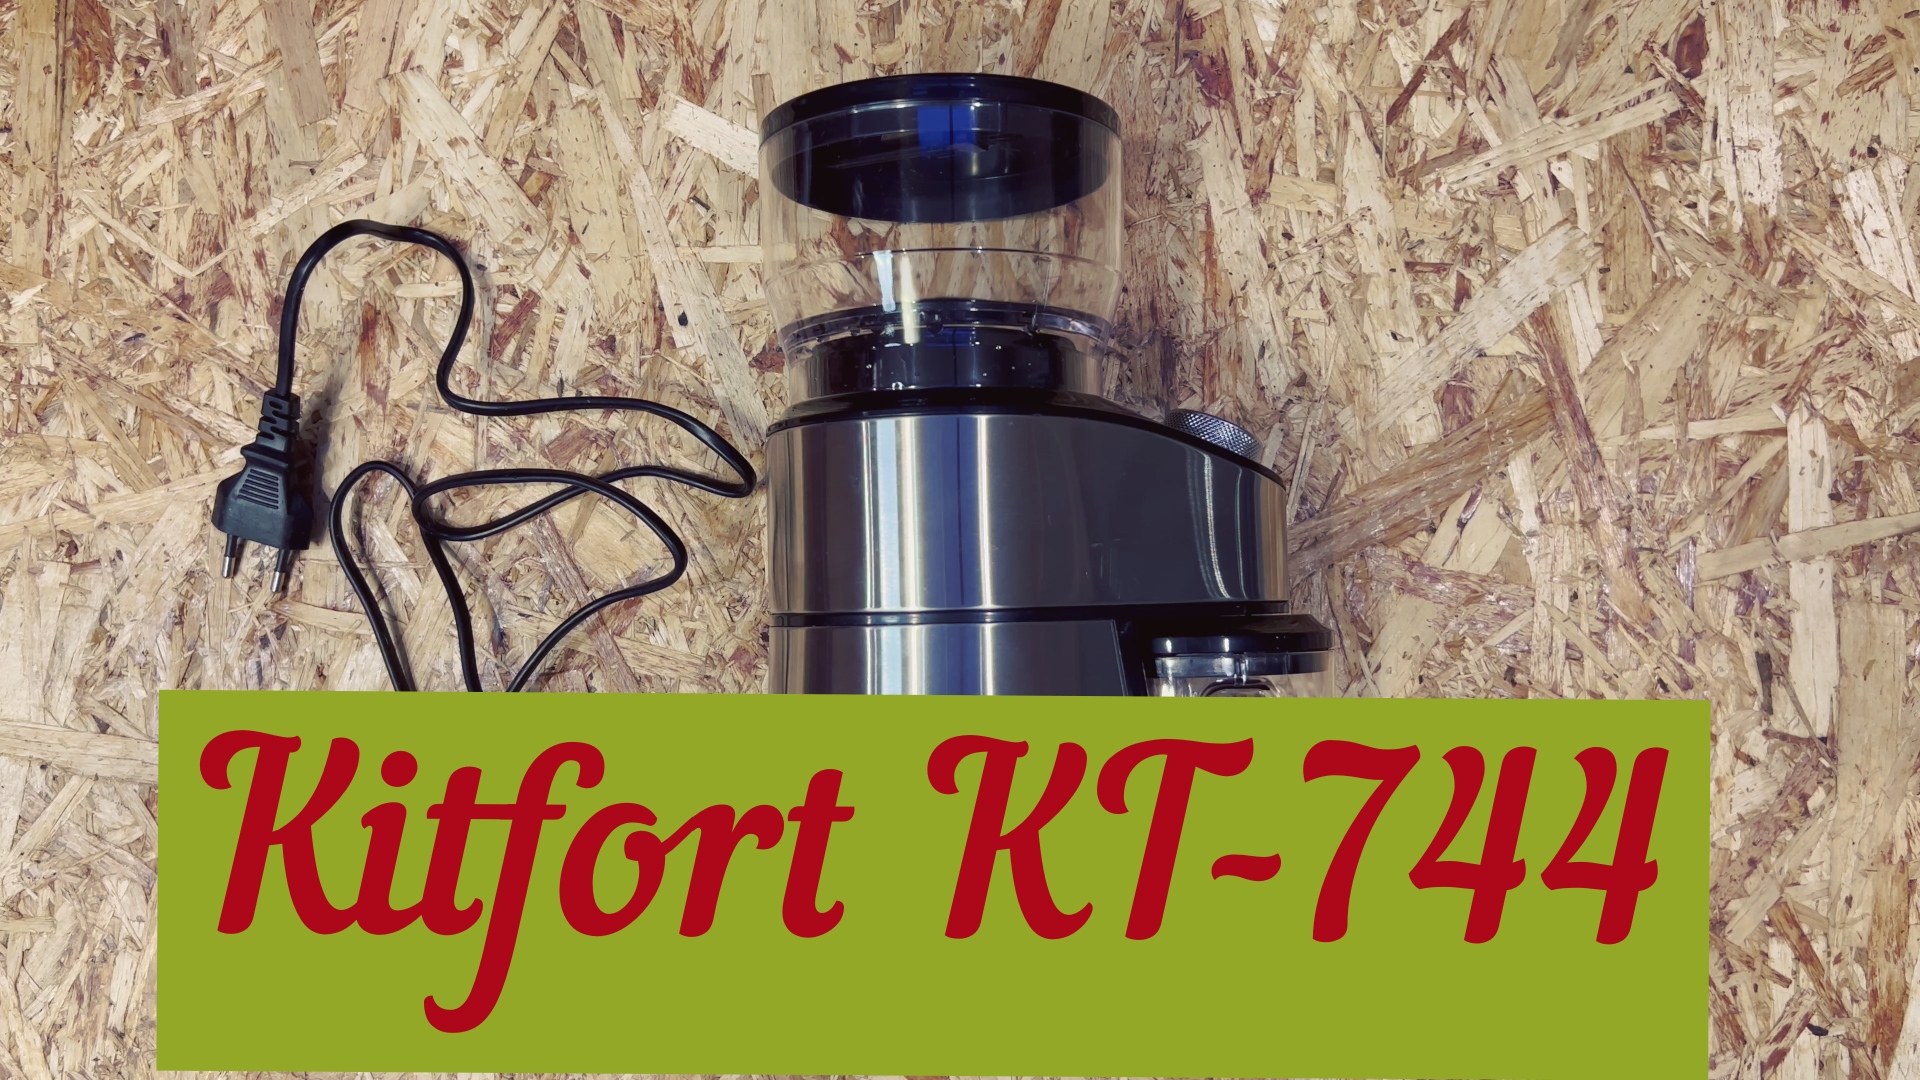 Жерновая кофемолка Kitfort KT-744